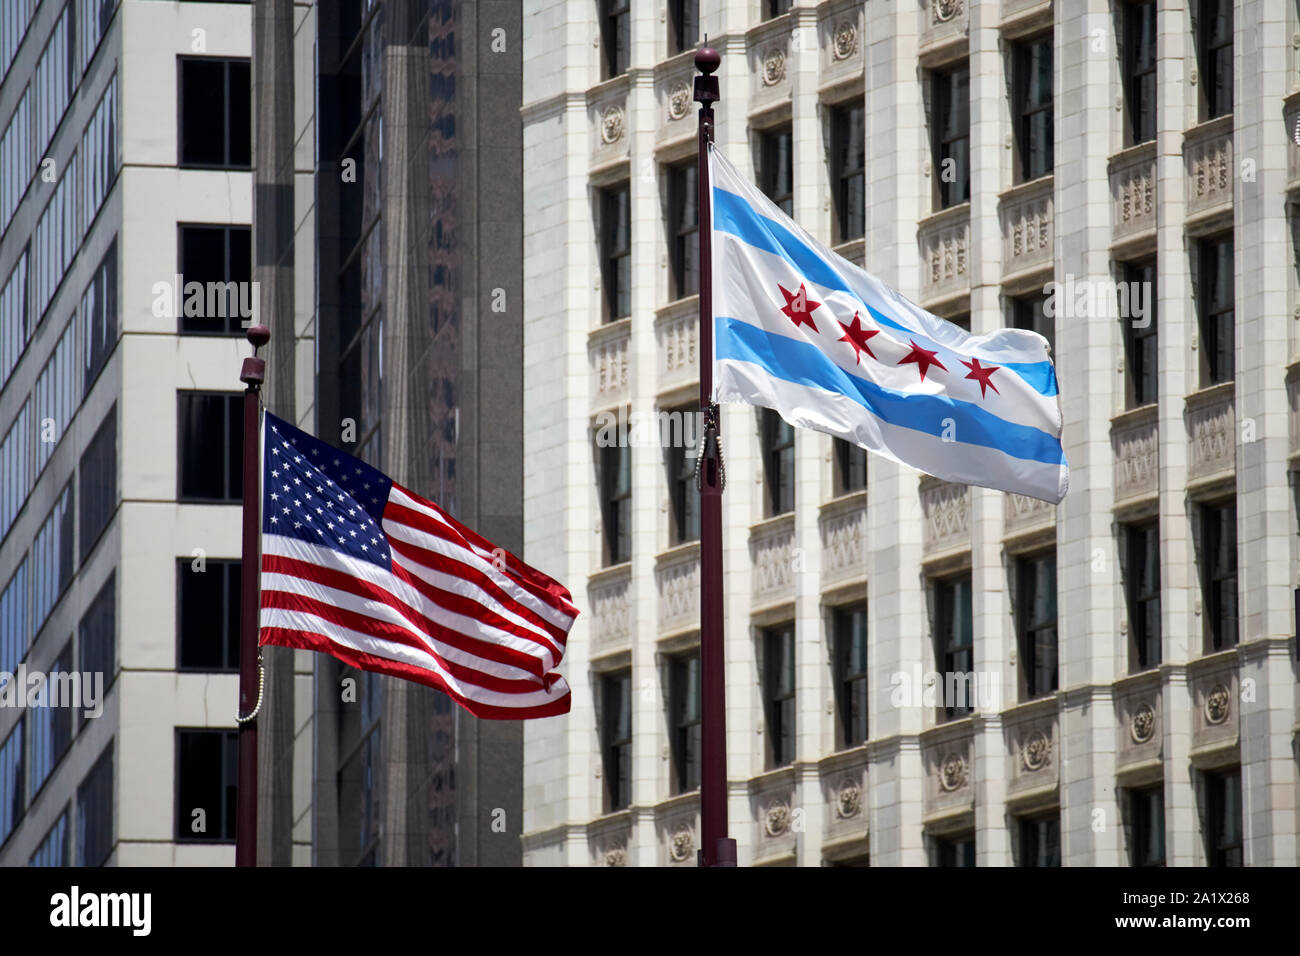 Uns und Chicago City Flags in der Innenstadt von Chicago fliegen in der Windy City Chicago Illinois Vereinigte Staaten von Amerika Stockfoto